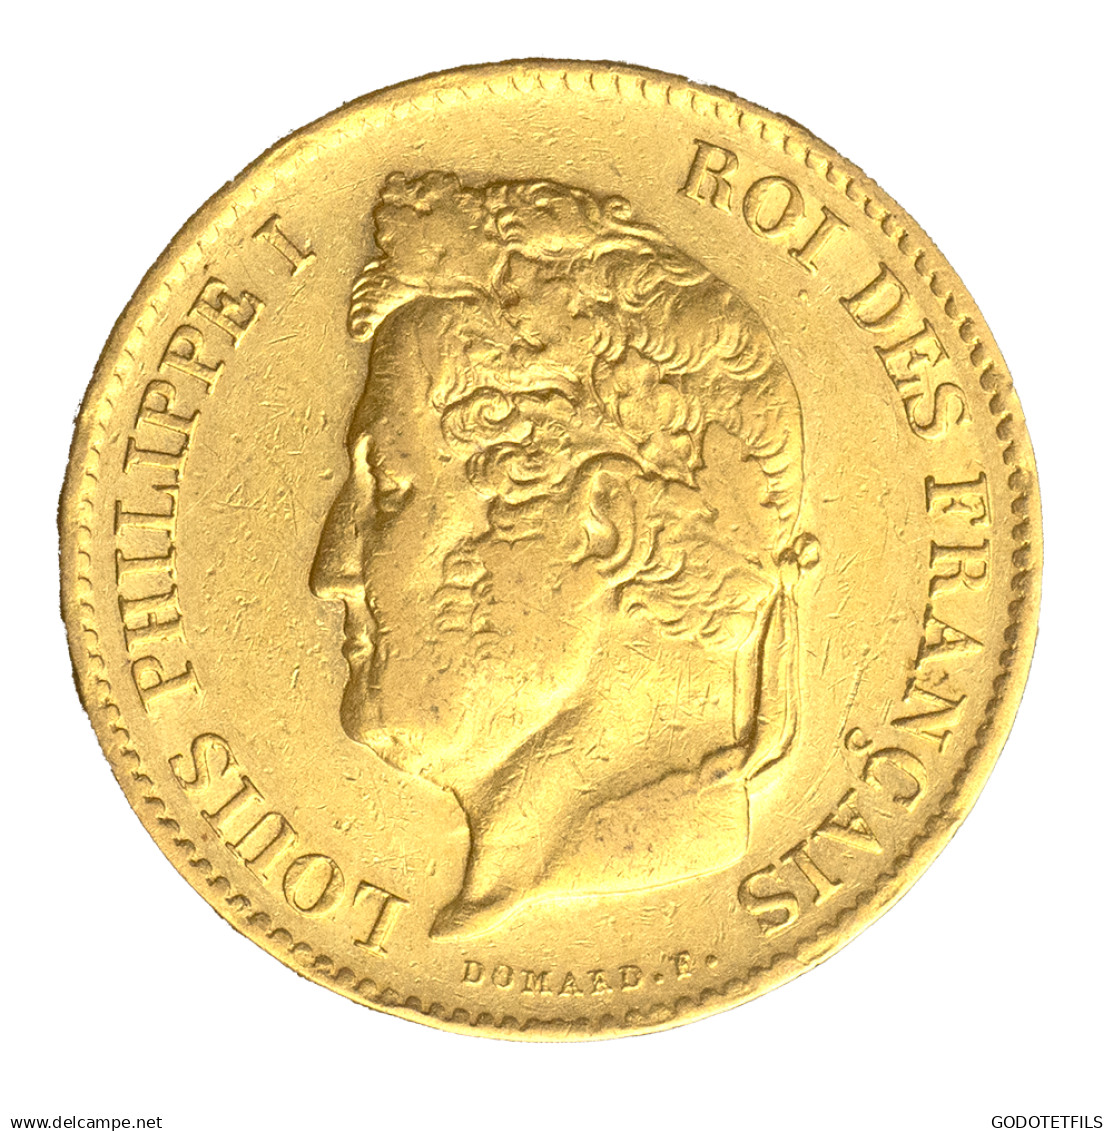 Louis-Philippe-40 Francs 1833 Paris - 40 Francs (gold)